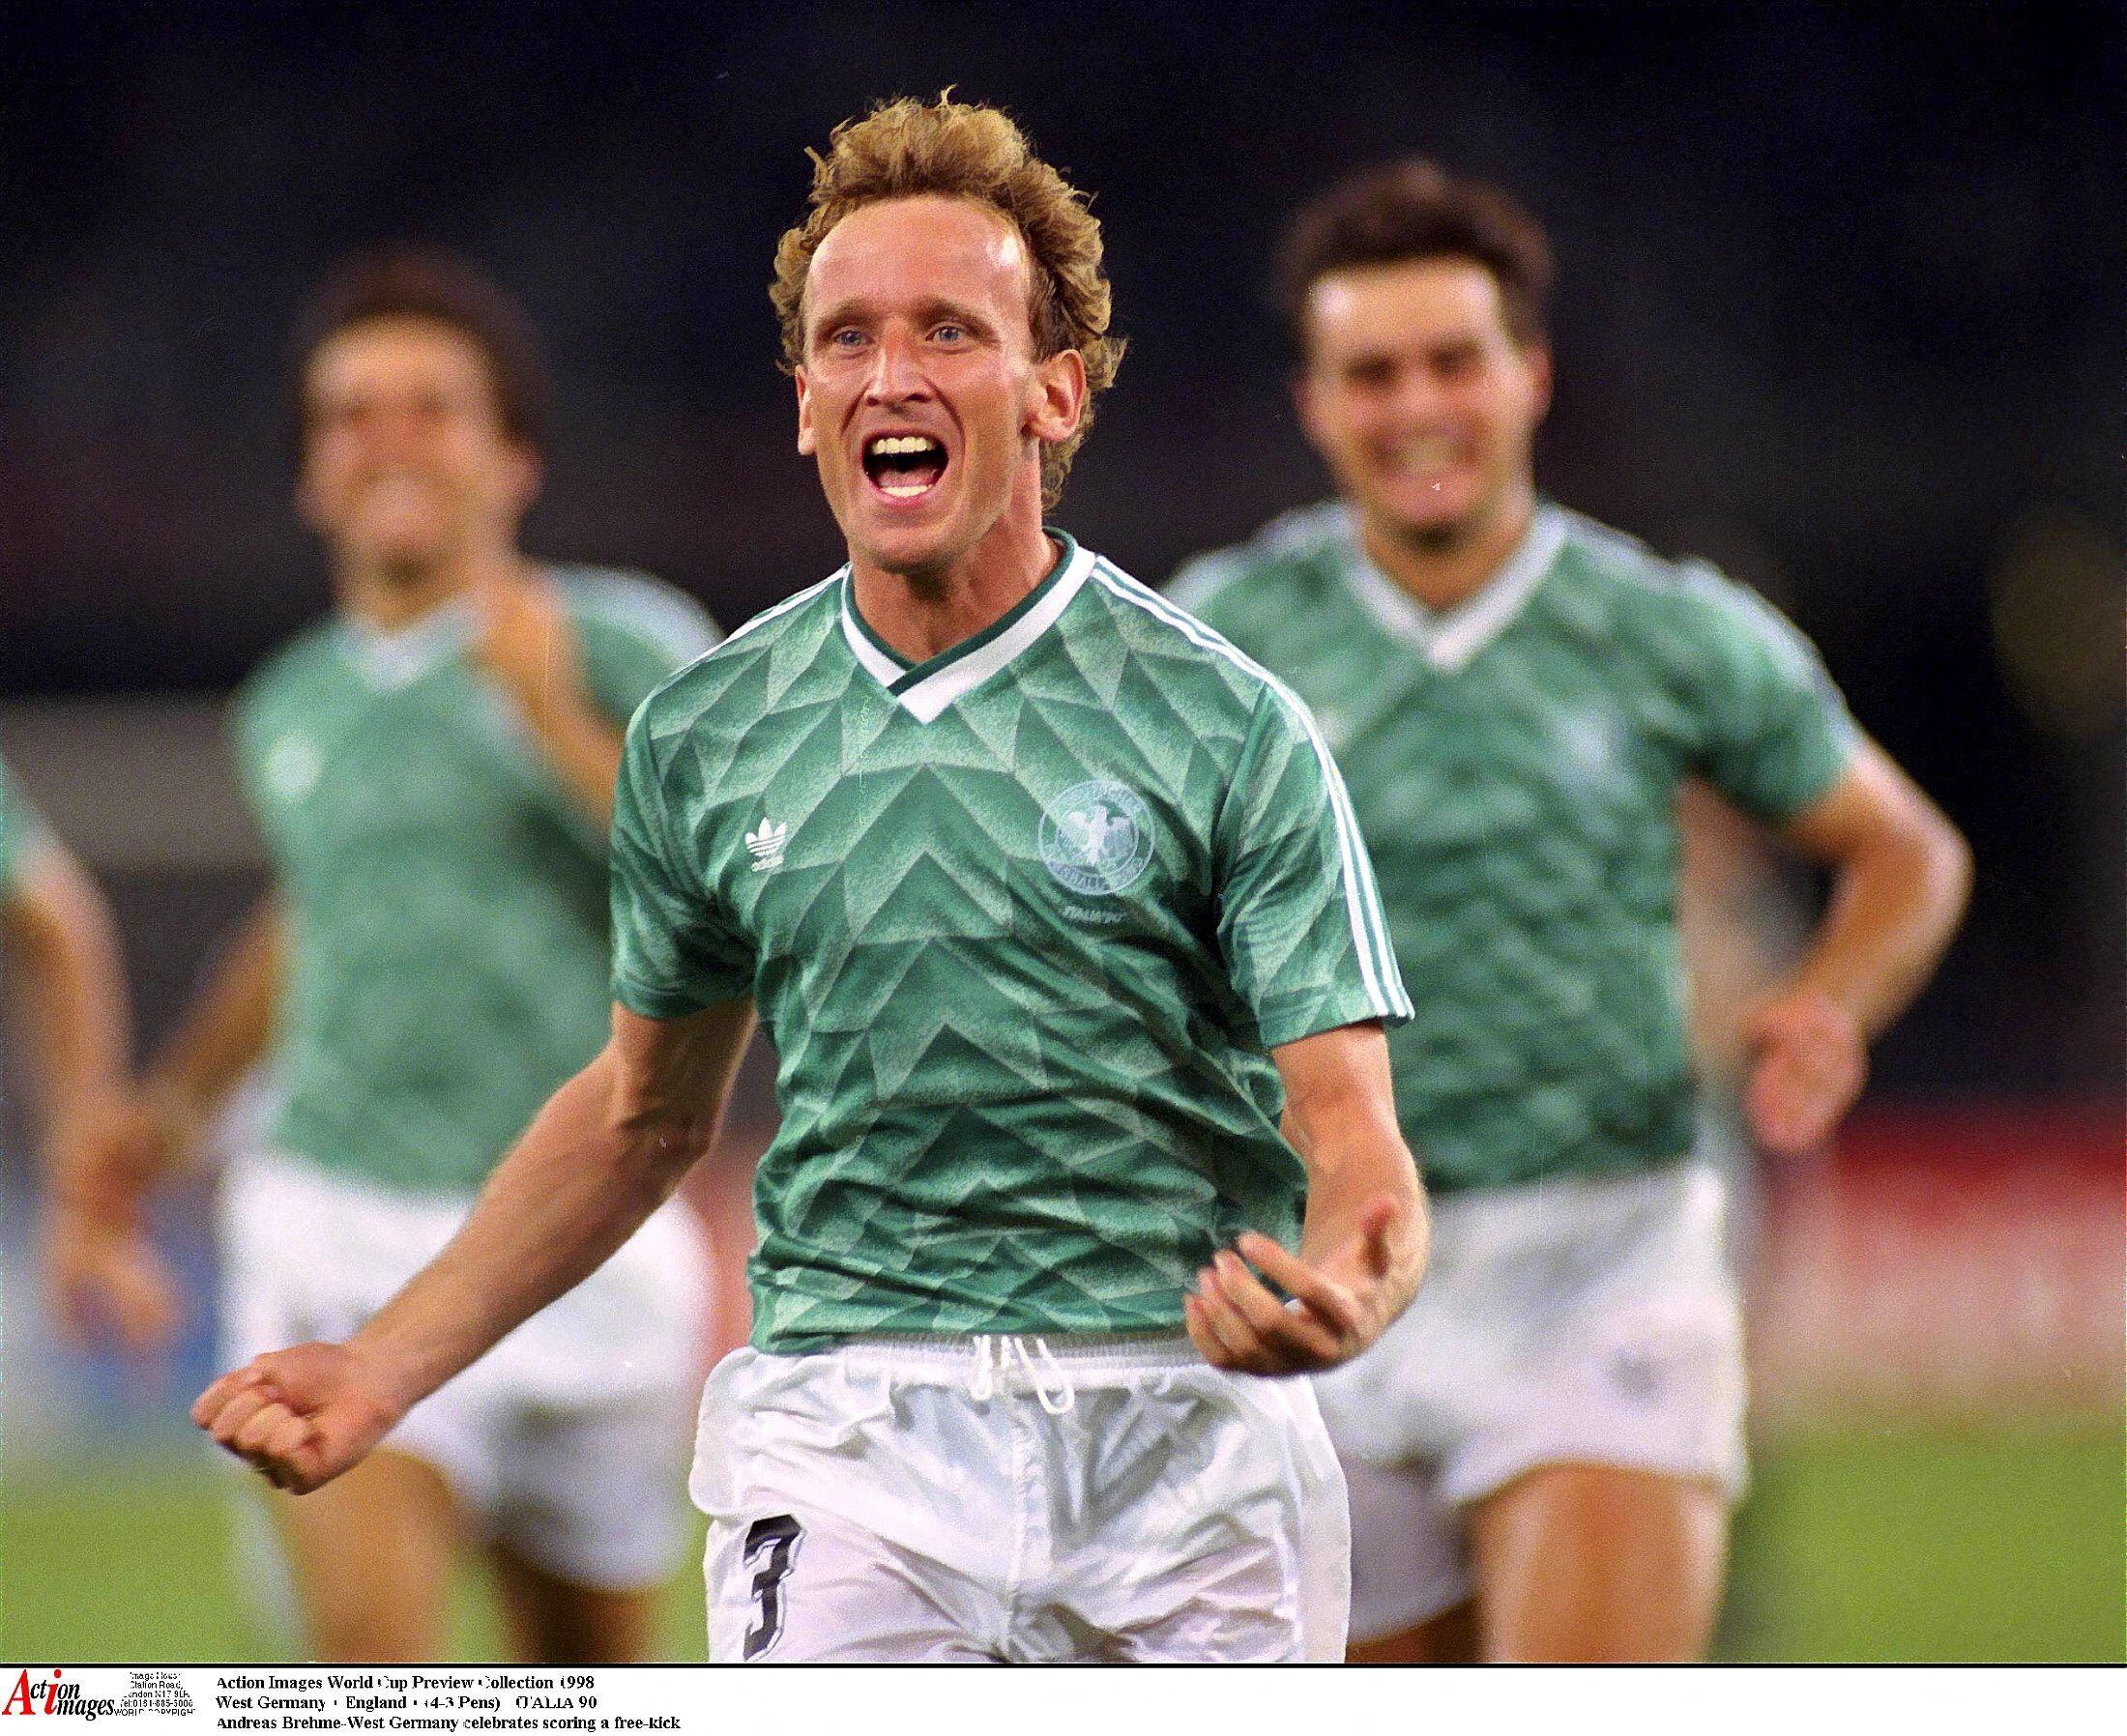 El color verde característico de las camisetas suplentes, en este caso Andreas Brehme durante Italia 90' (Foto: Action Images)